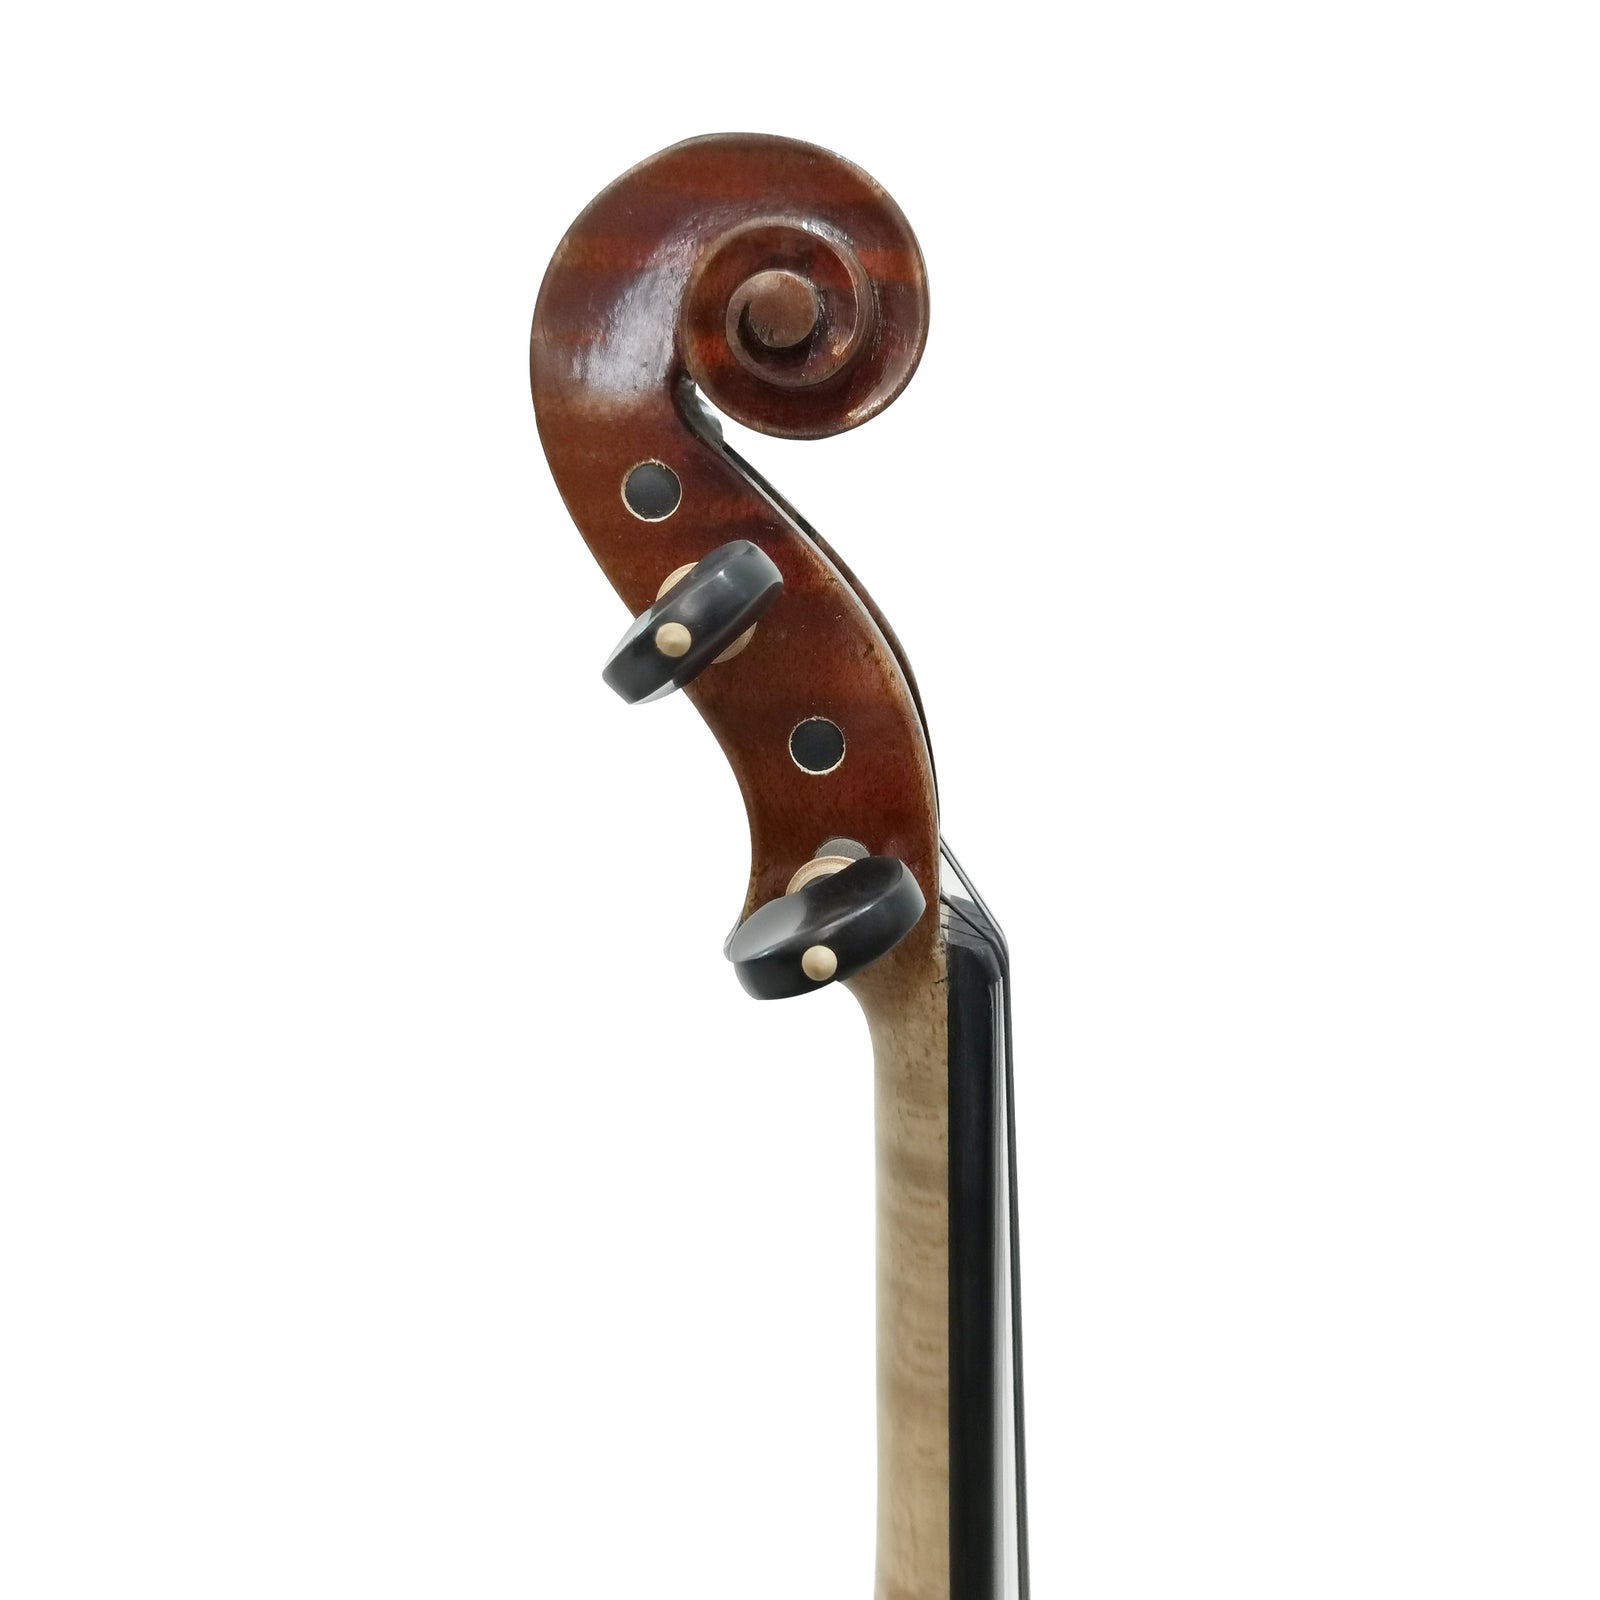 Violin - PASSIONE 44-B